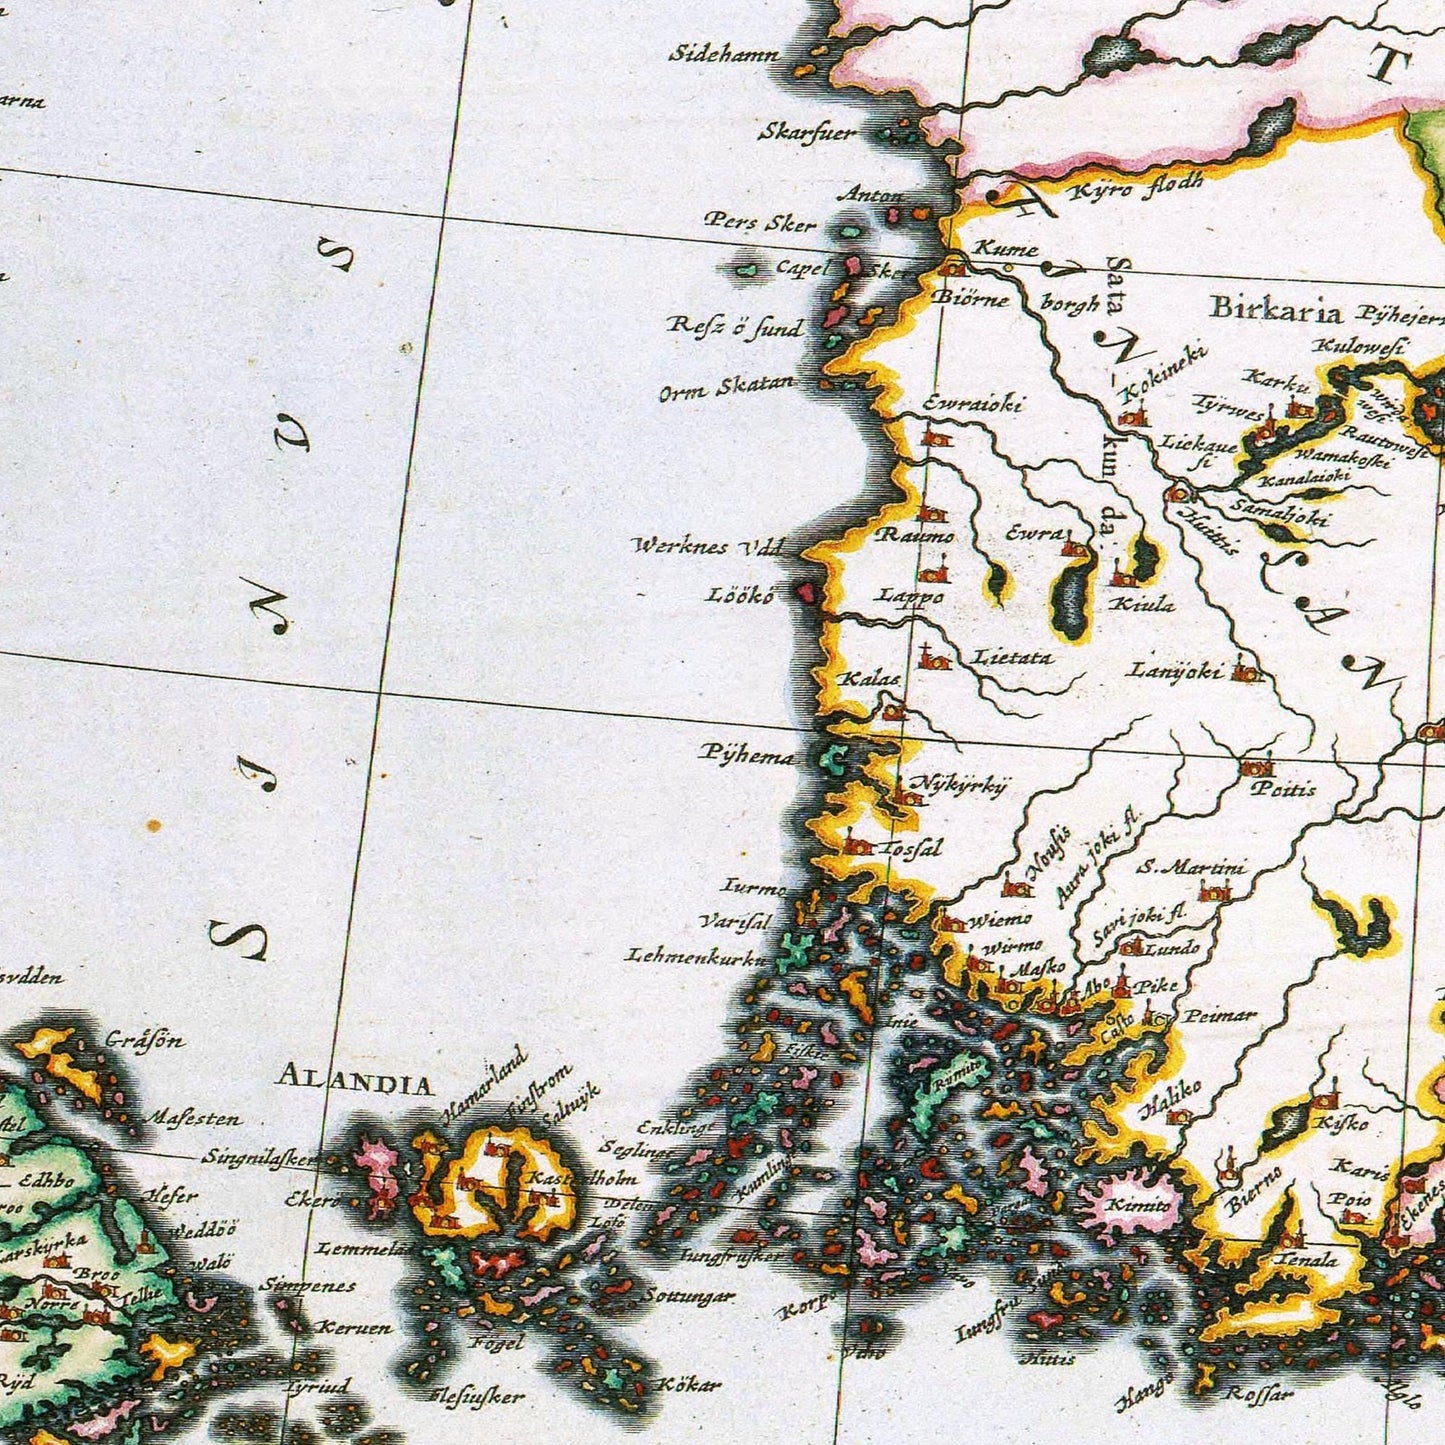 Historische Landkarte Finnland um 1690